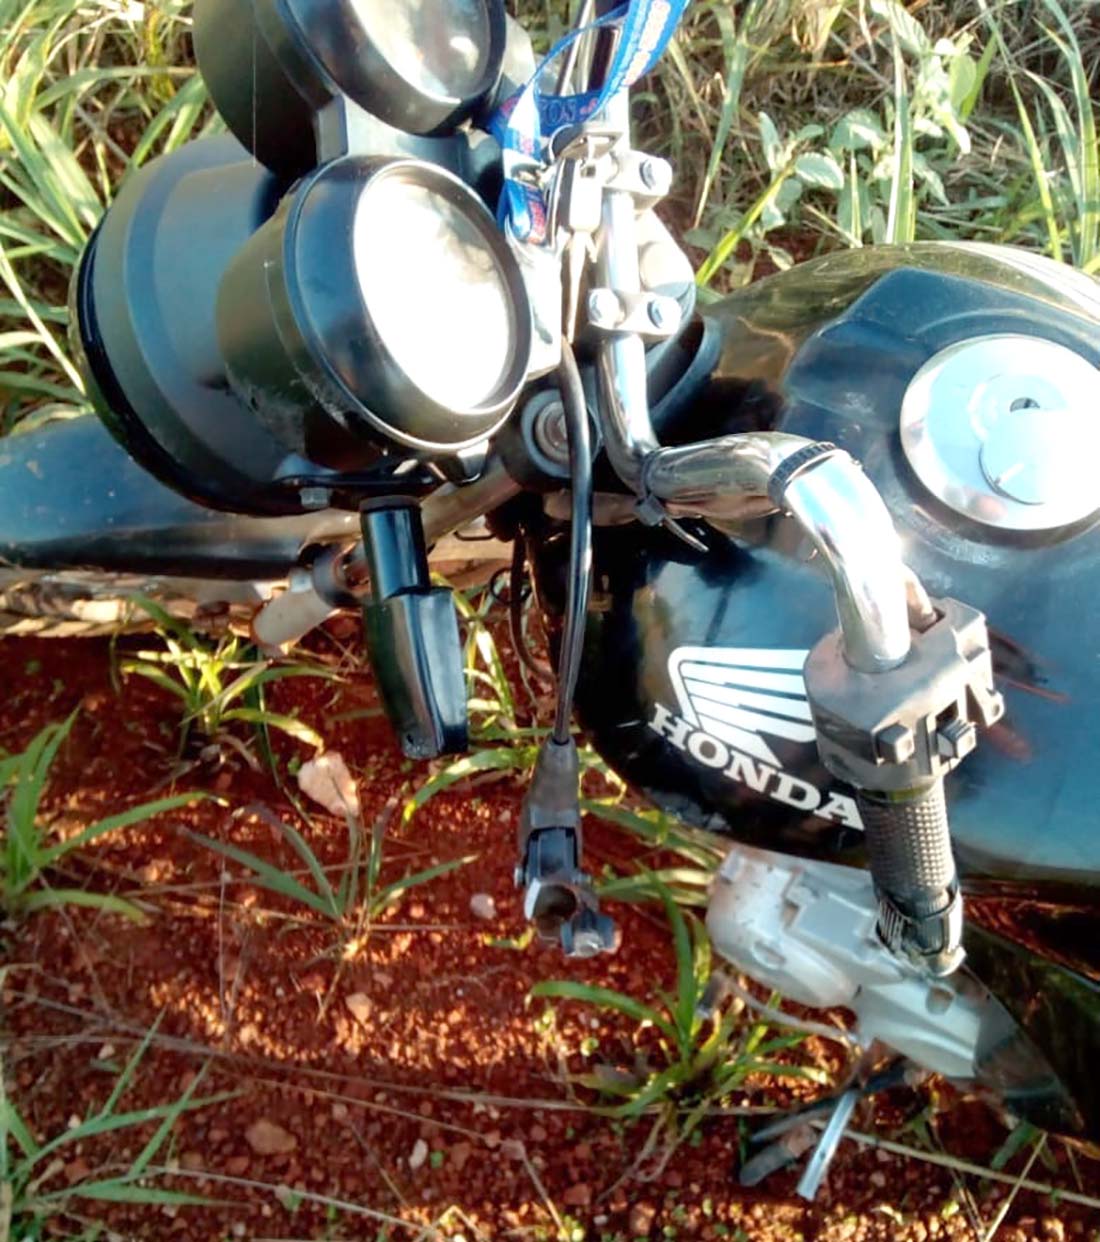 Carona de moto morre  em acidente na MT 175